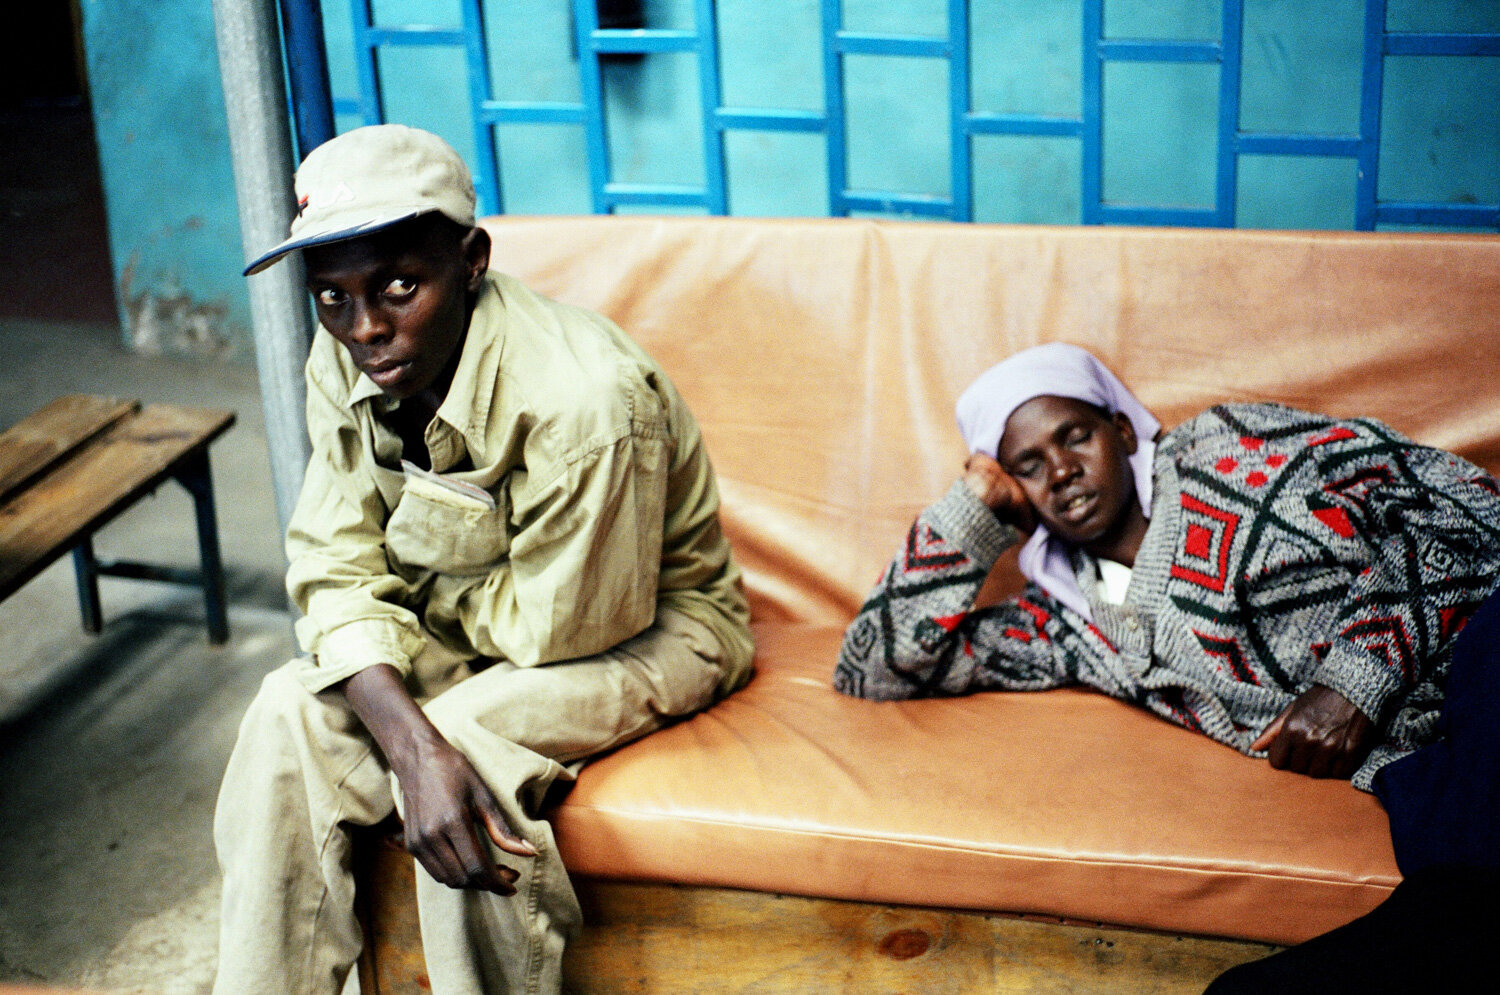  Un homme attend un diagnostic dans la salle d'attente de la clinique SIDA du bidonville de Matharé. Avec Médecins Sans Frontières, dans la lutte pour l'accès aux médicaments essentiels. Nairobi, Kenya. Mars 2005 // A man waits for a diagnosis in the